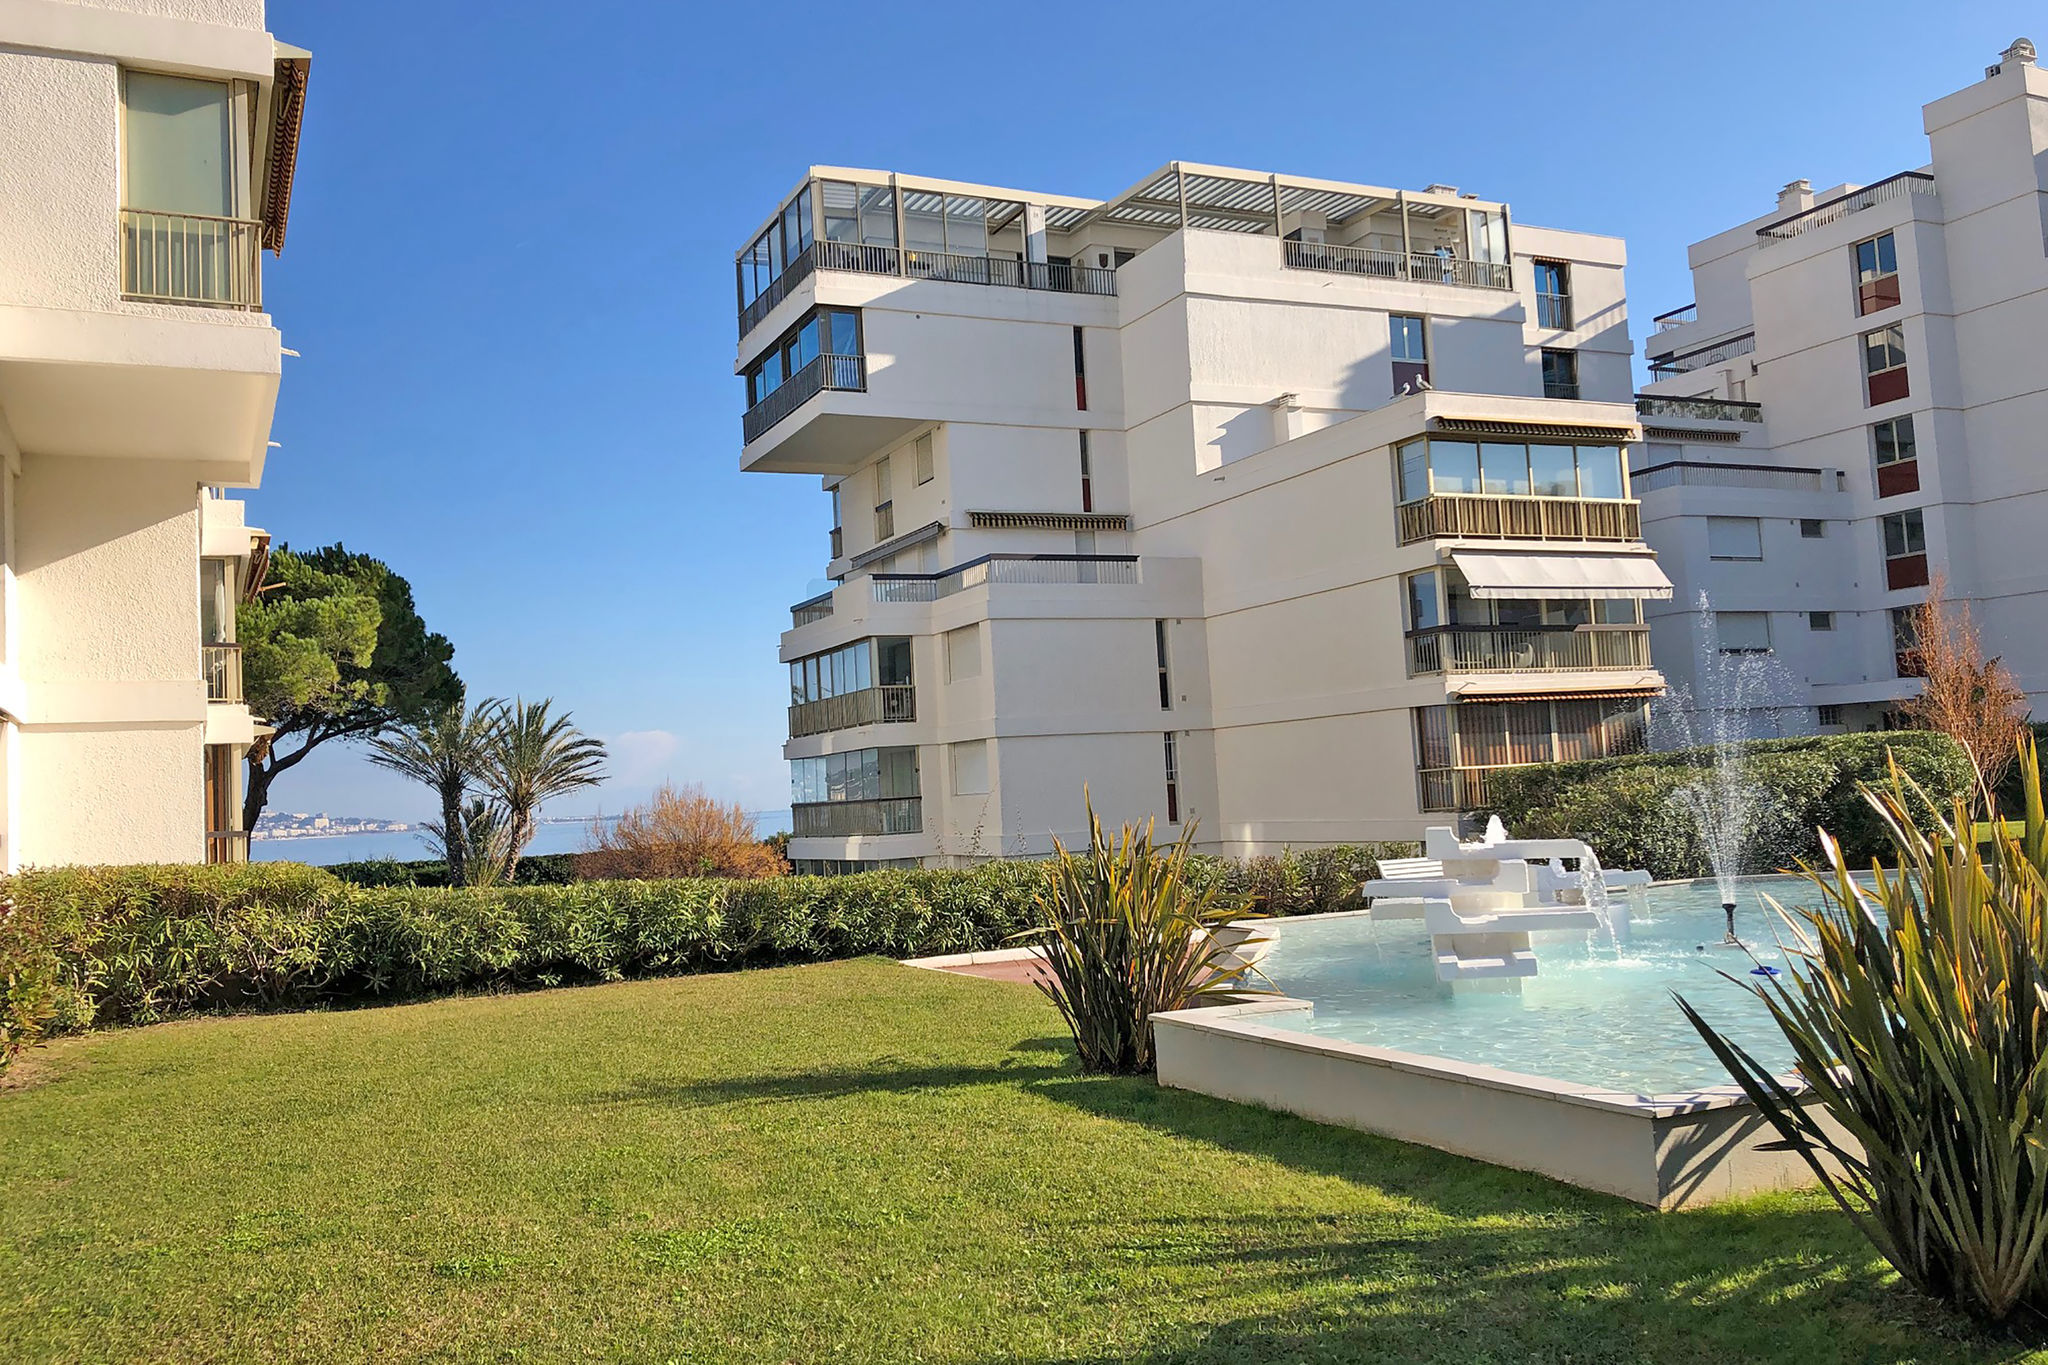 Appartement moderne à Mandelieu-la-Napoule avec piscine